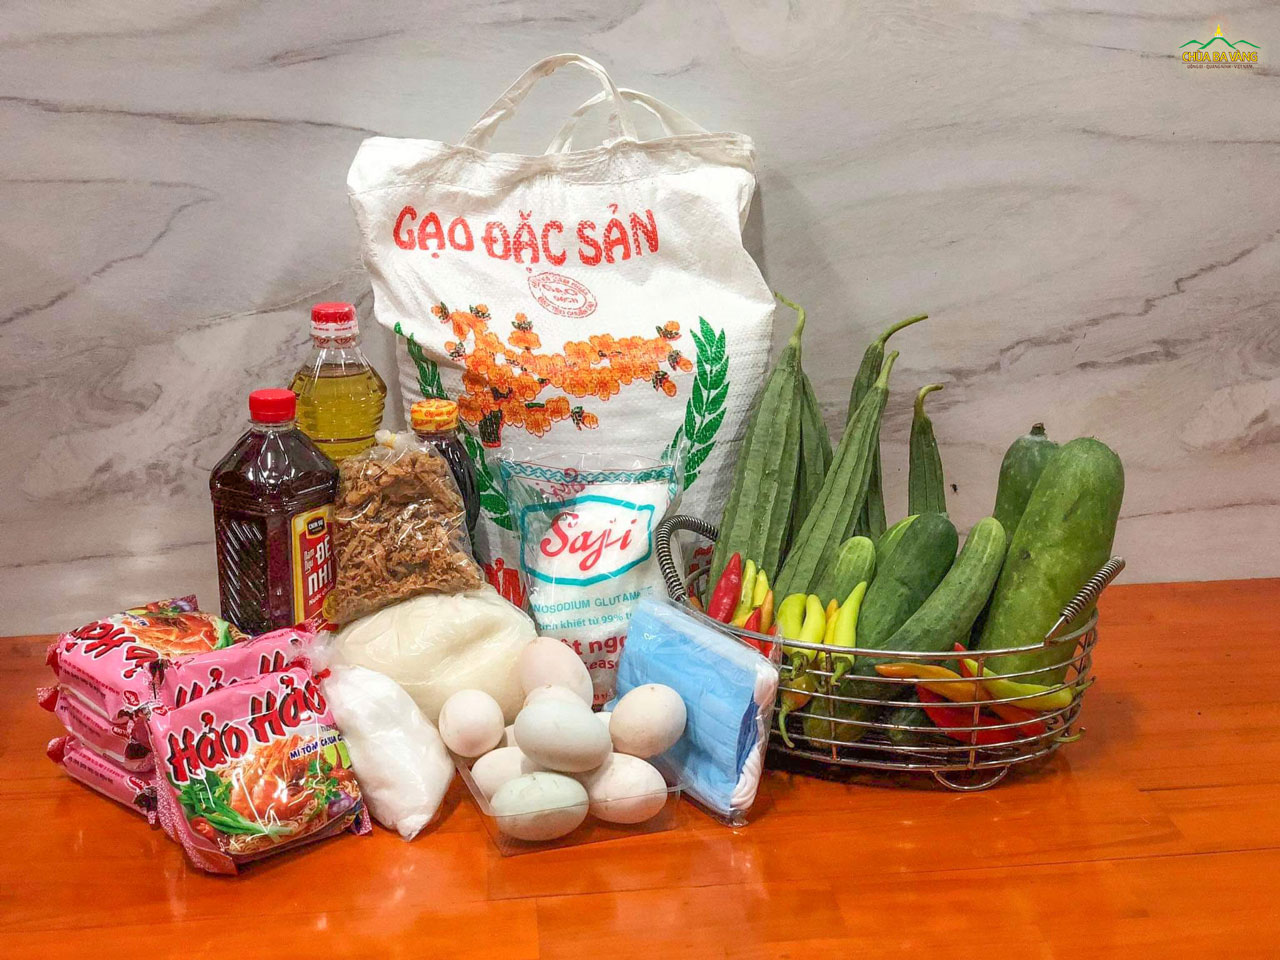 Những nhu yếu phẩm thiết yếu hỗ trợ những hộ nghèo tại huyện Trà Cú, tỉnh Trà Vinh  